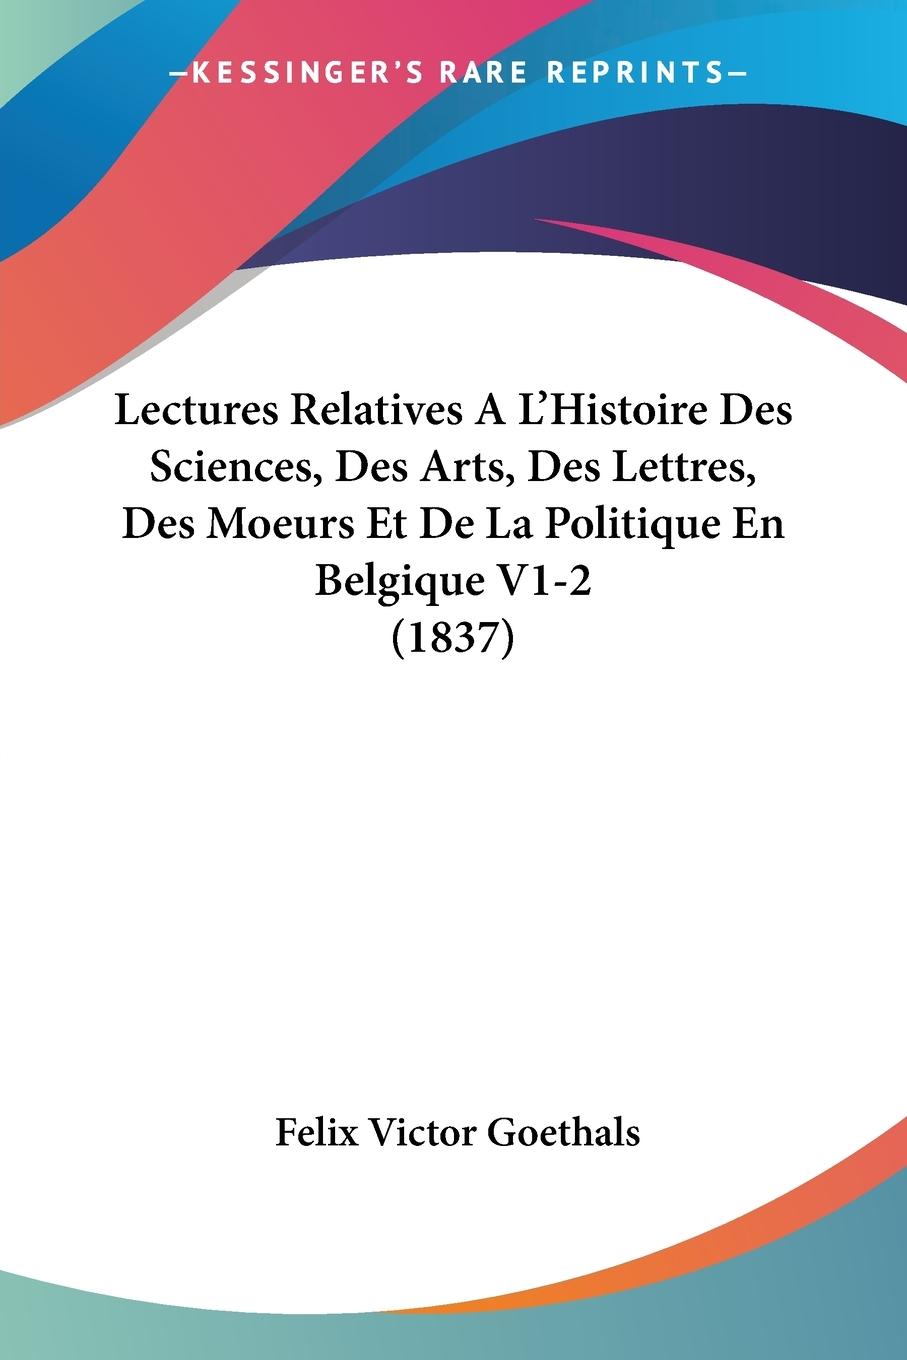 Lectures Relatives A L Histoire Des Sciences, Des Arts, Des Lettres, Des Moeurs Et De La Politique En Belgique V1-2 (1837) - Goethals, Felix Victor